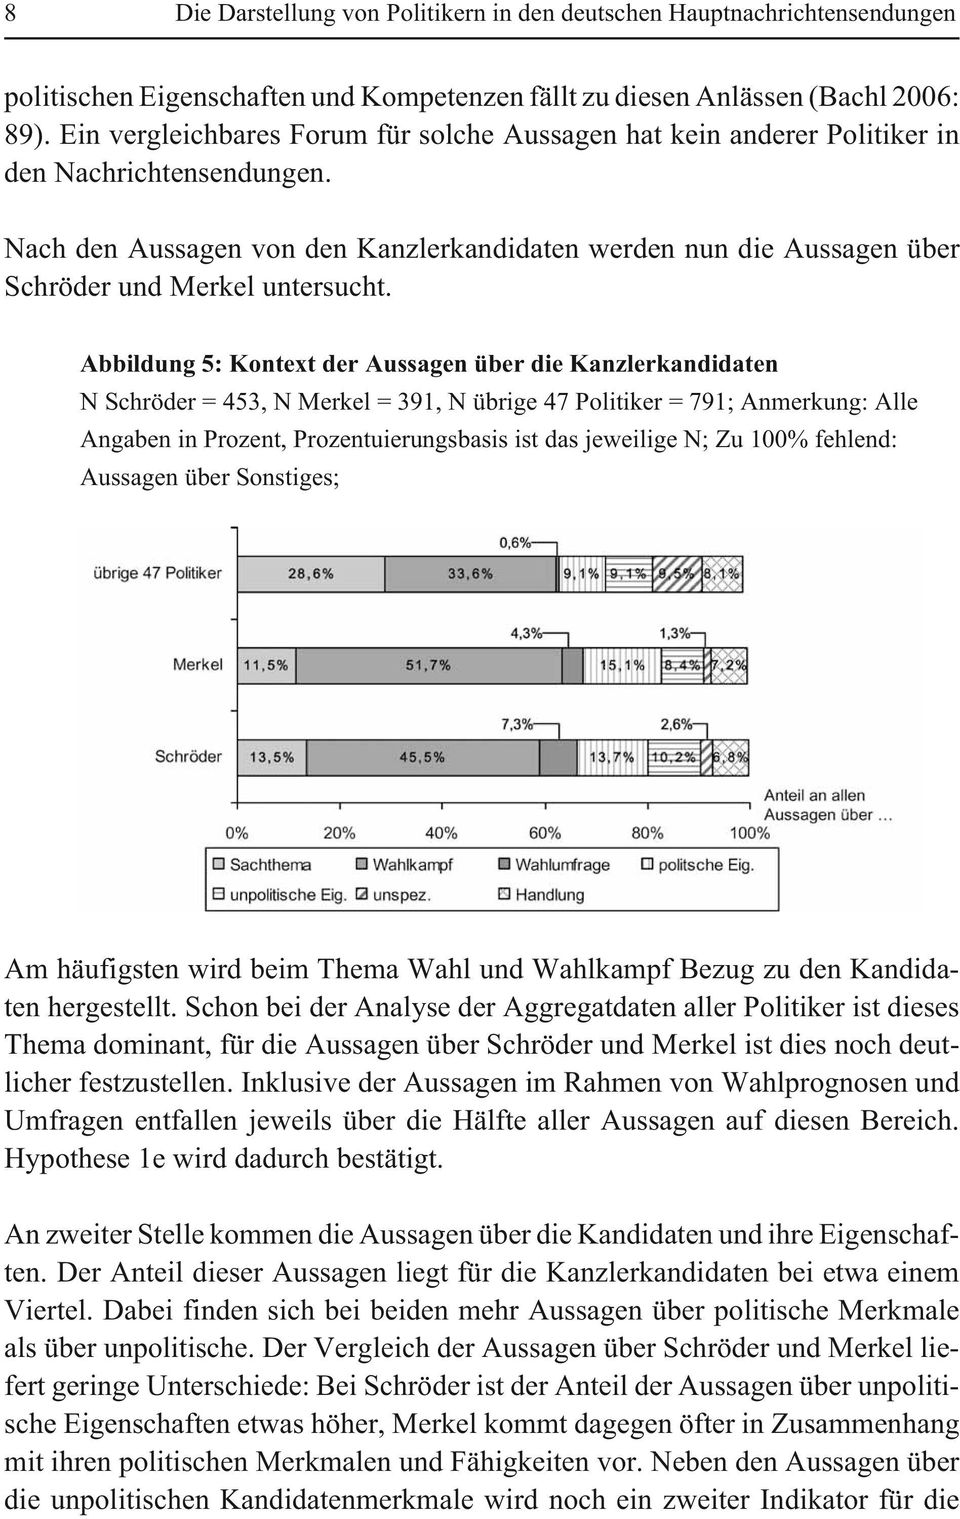 Abbildung 5: Kontext der Aussagen über die Kanzlerkandidaten N Schröder = 453, N Merkel = 391, N übrige 47 Politiker = 791; Anmerkung: Alle Angaben in Prozent, Prozentuierungsbasis ist das jeweilige